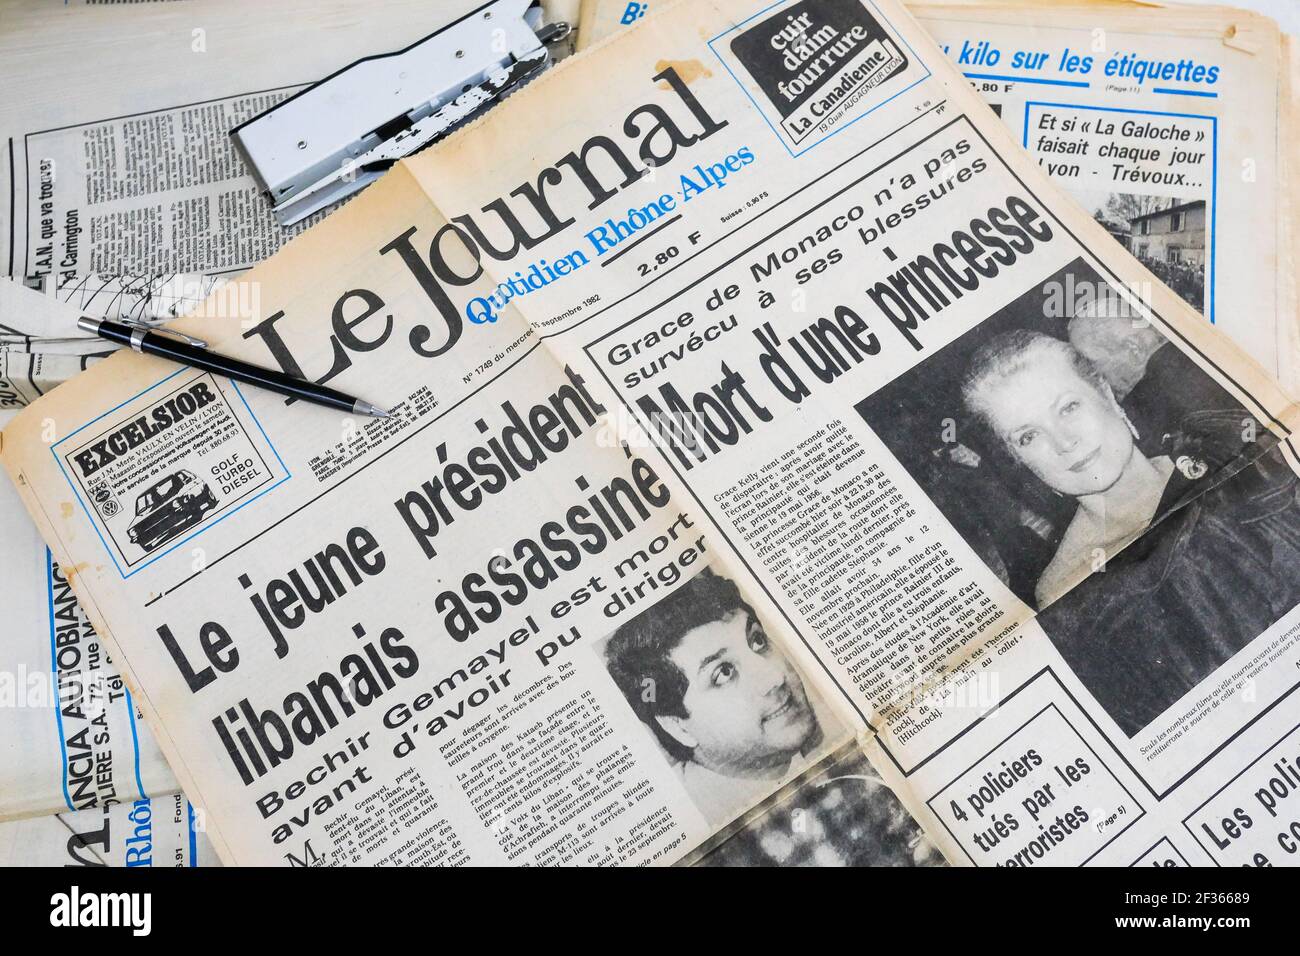 Tod von Bechir Gemayel und Grace Kelly, Zeitung, Frankreich Stockfoto